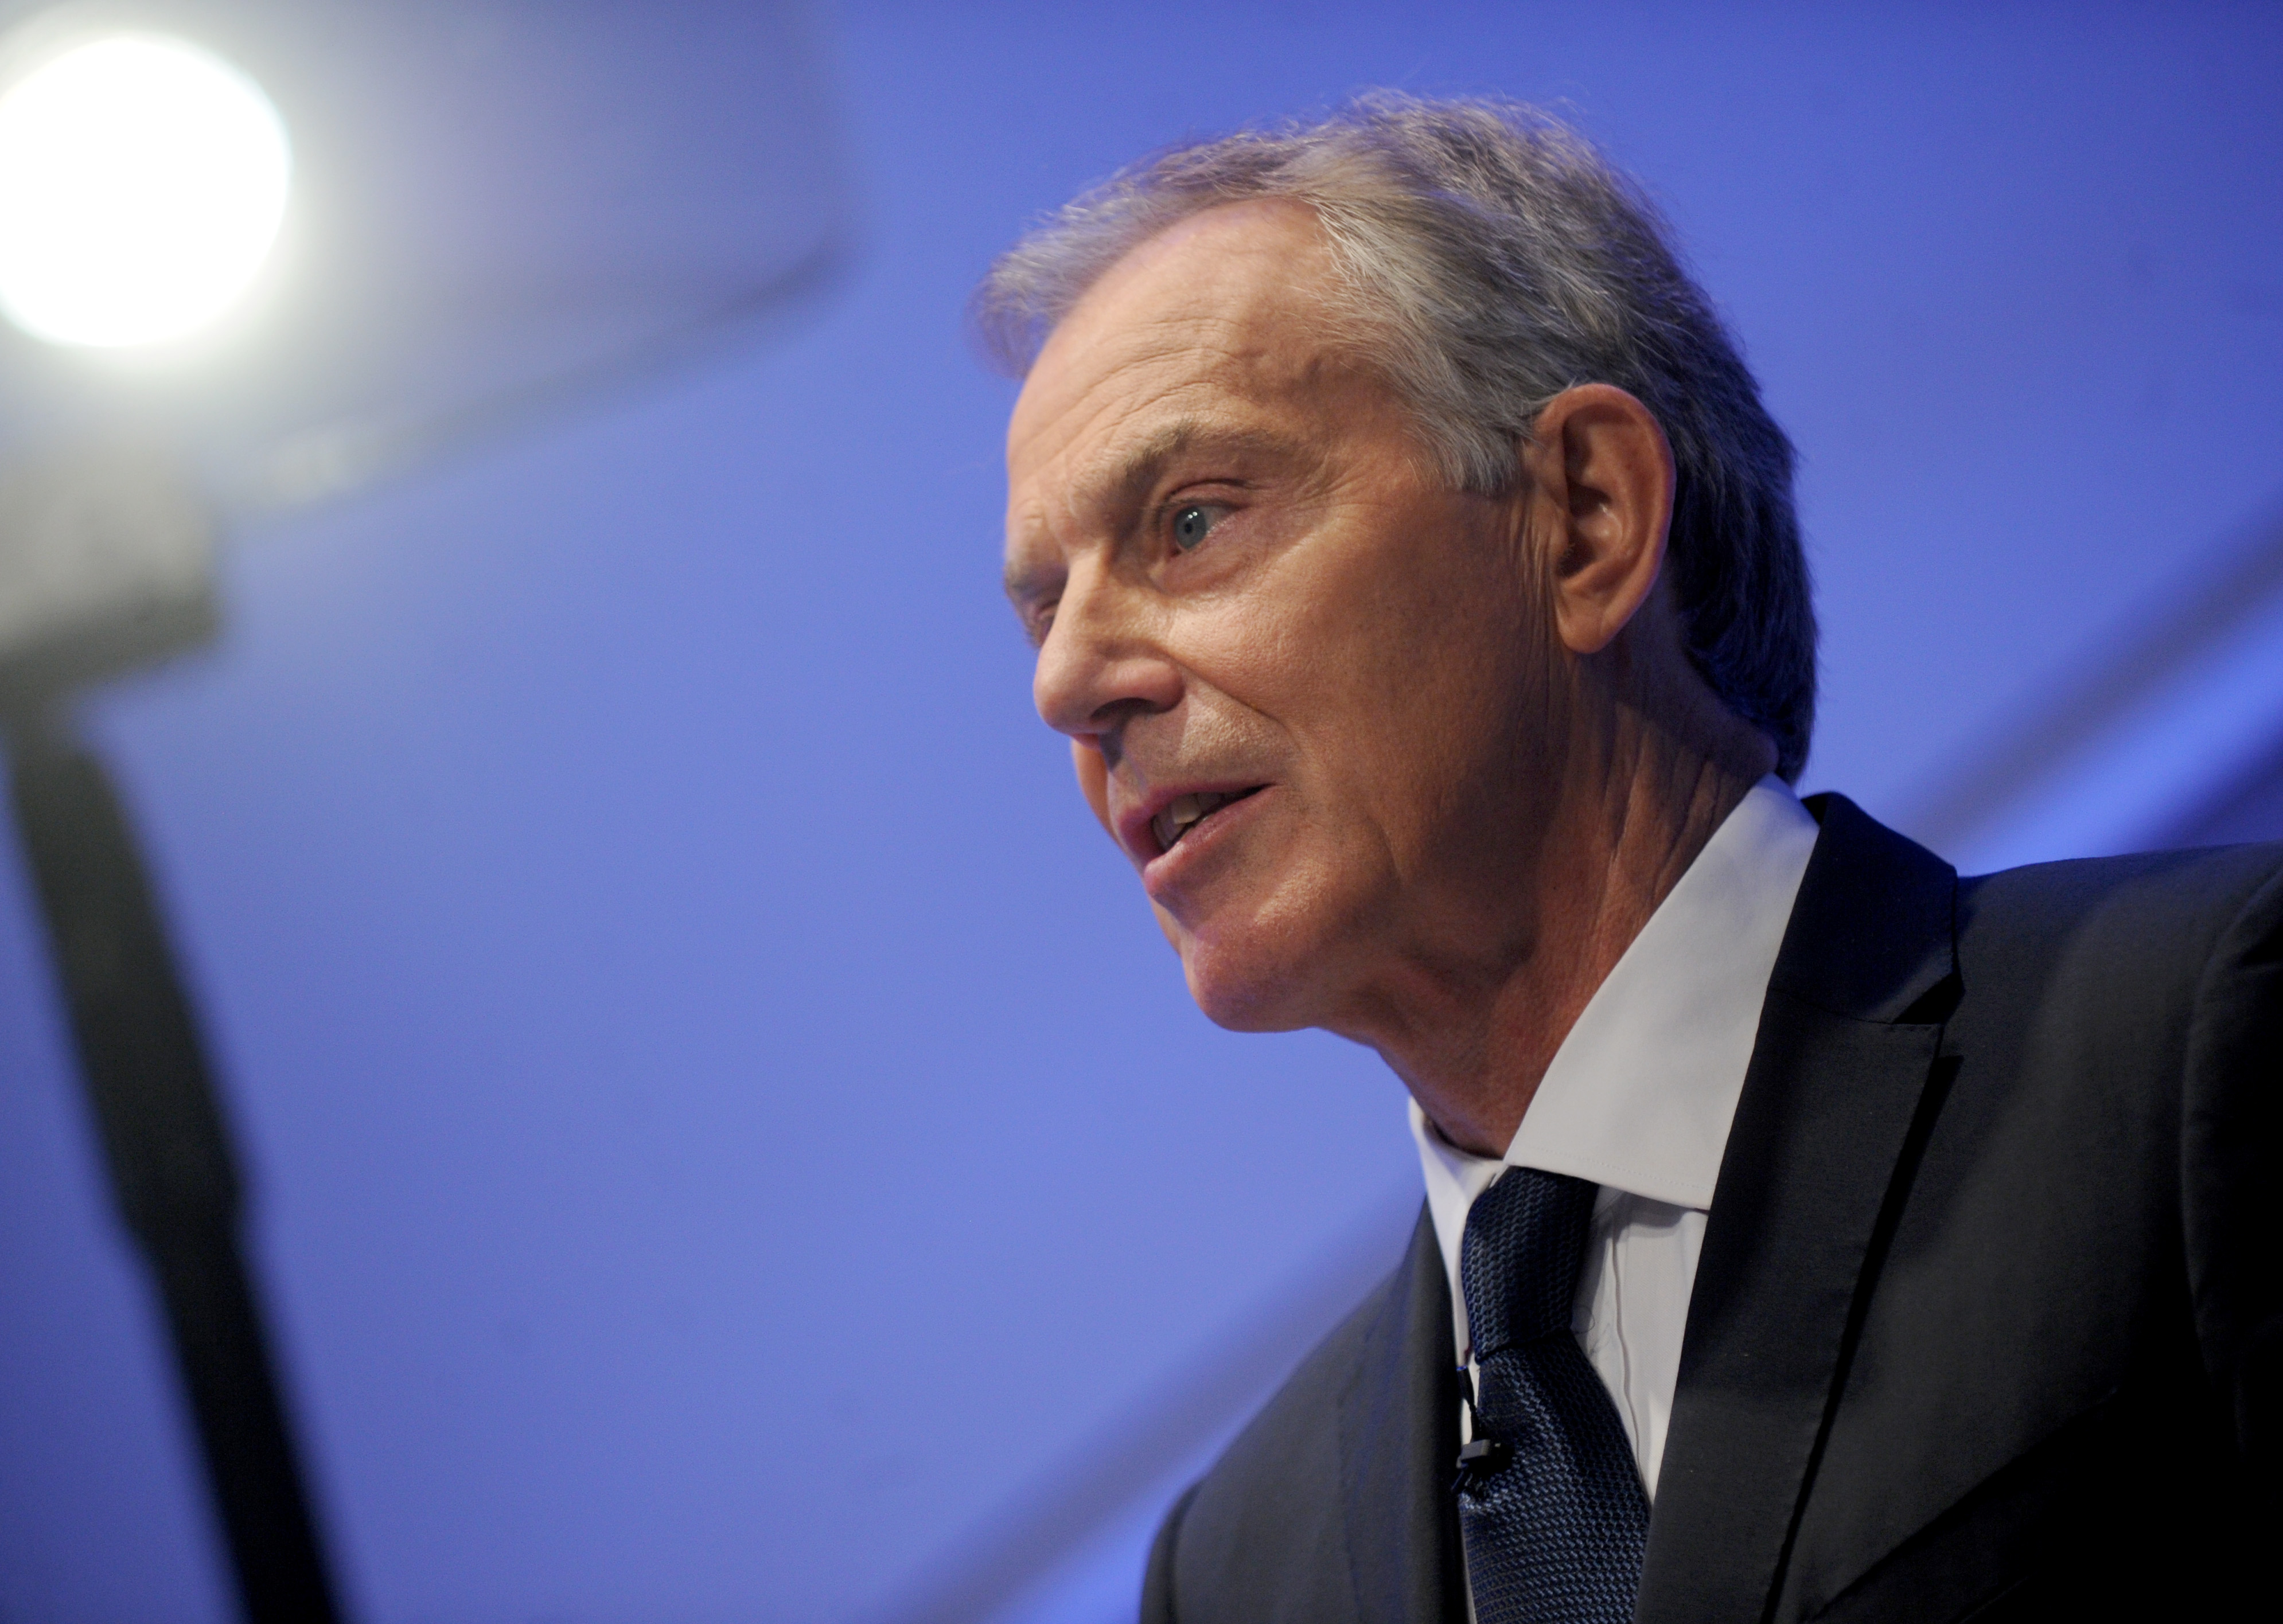 Tony Blair Speaks On Islam - NYC